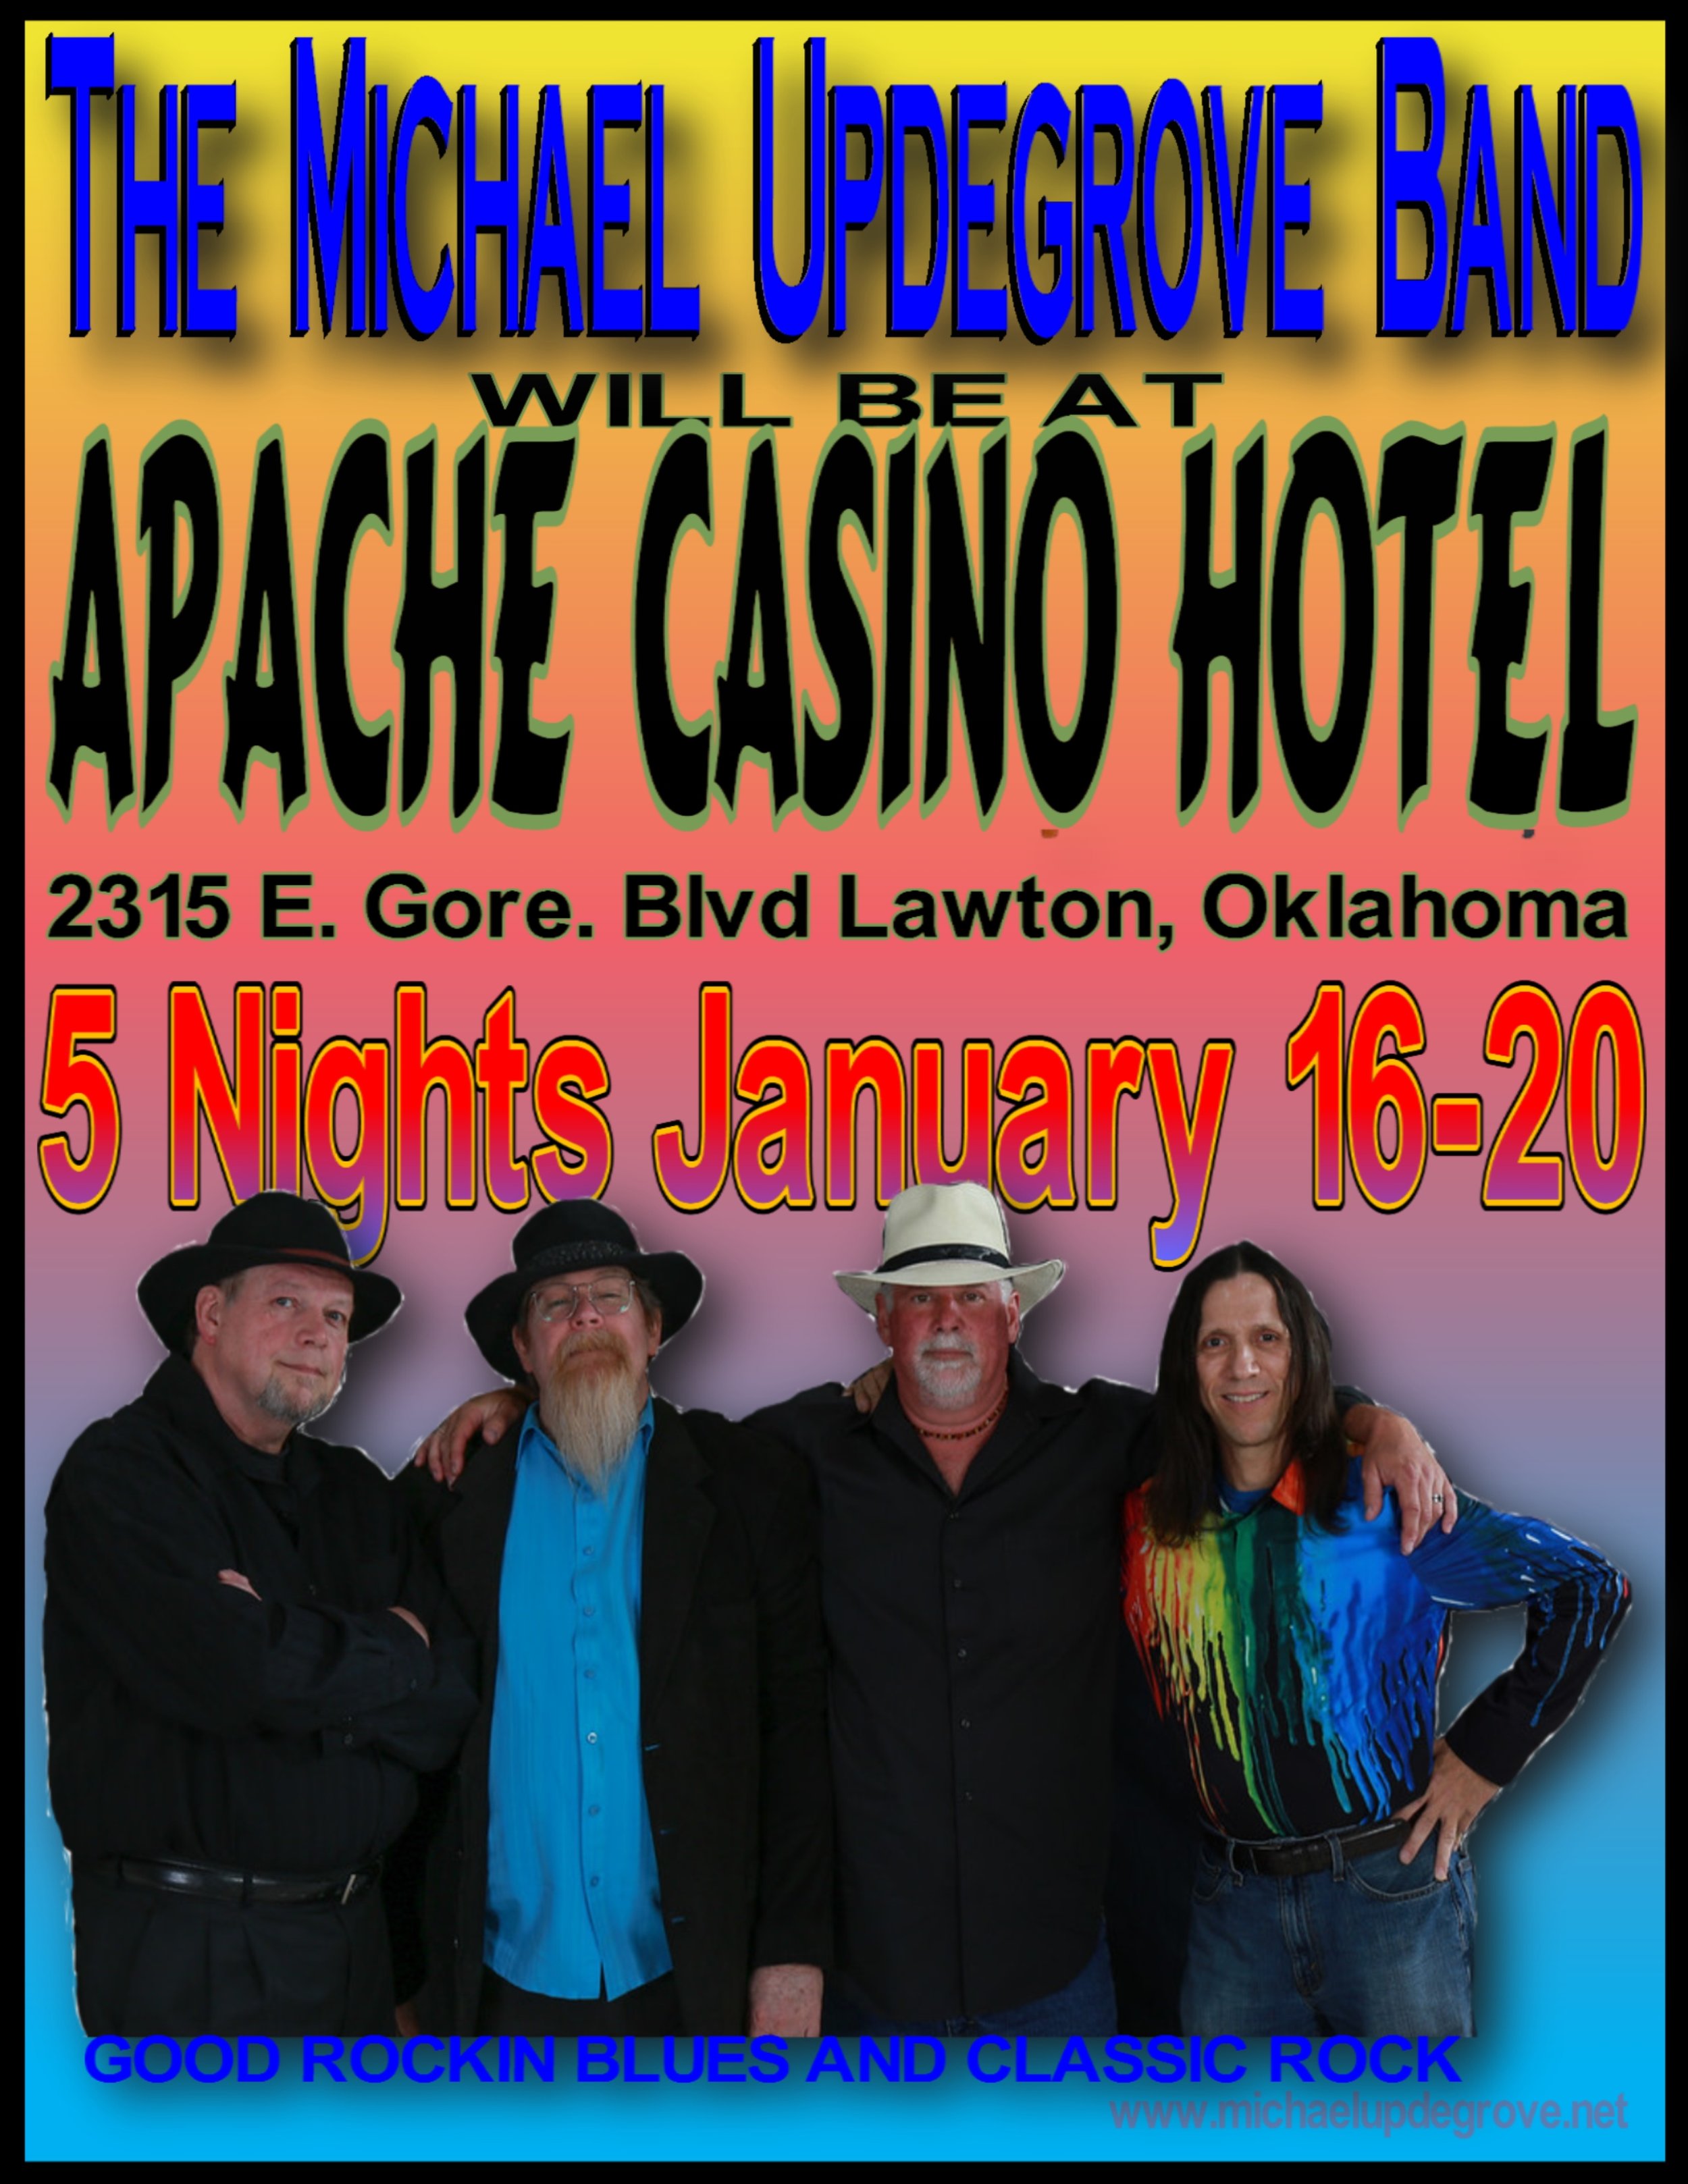 The Apache Casino January 2018.jpg